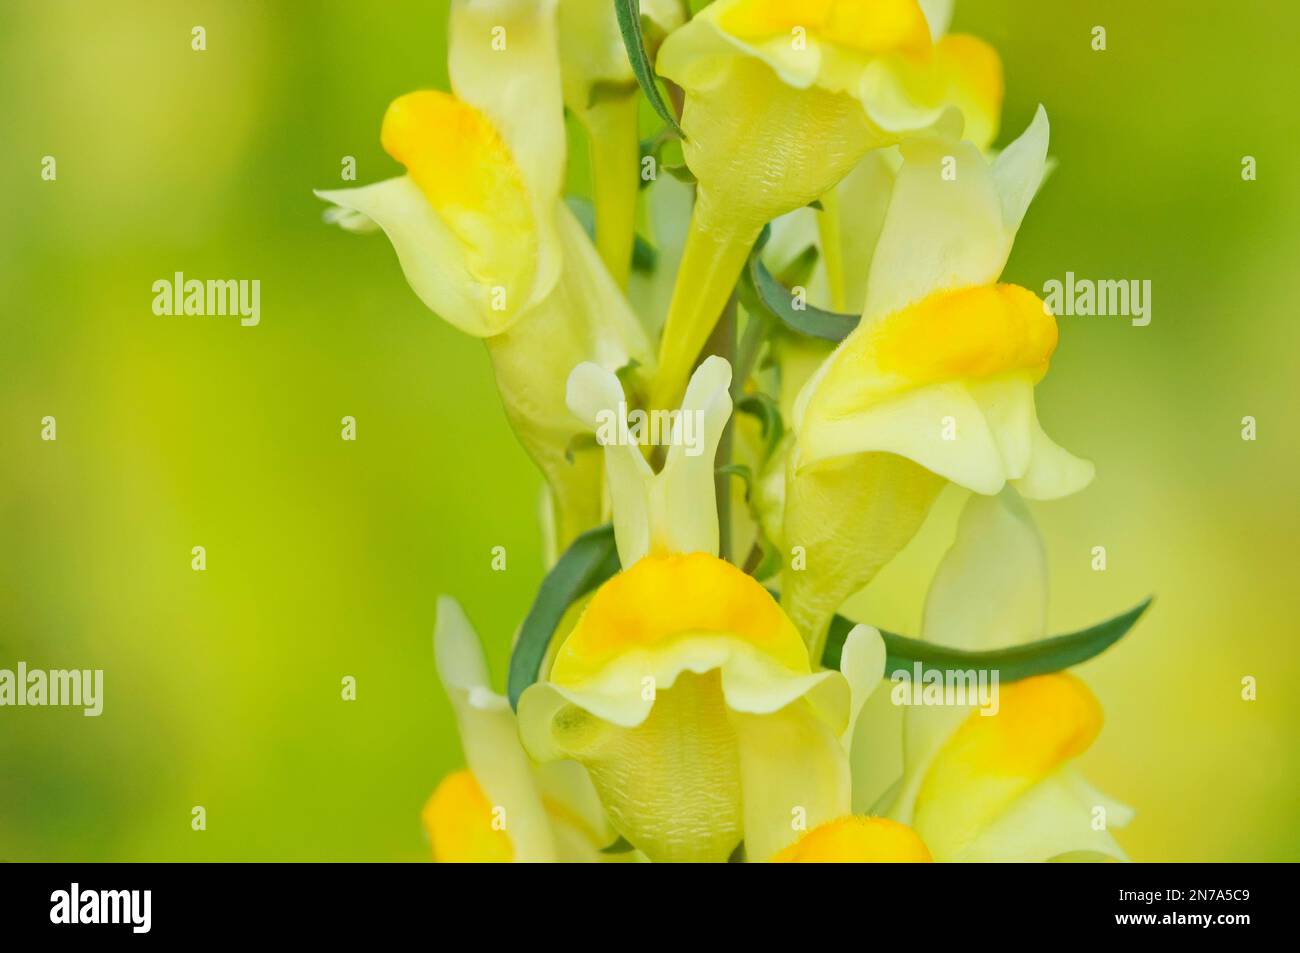 Beurre et oeufs de fleurs sauvages (Linaria vulgaris) Banque D'Images